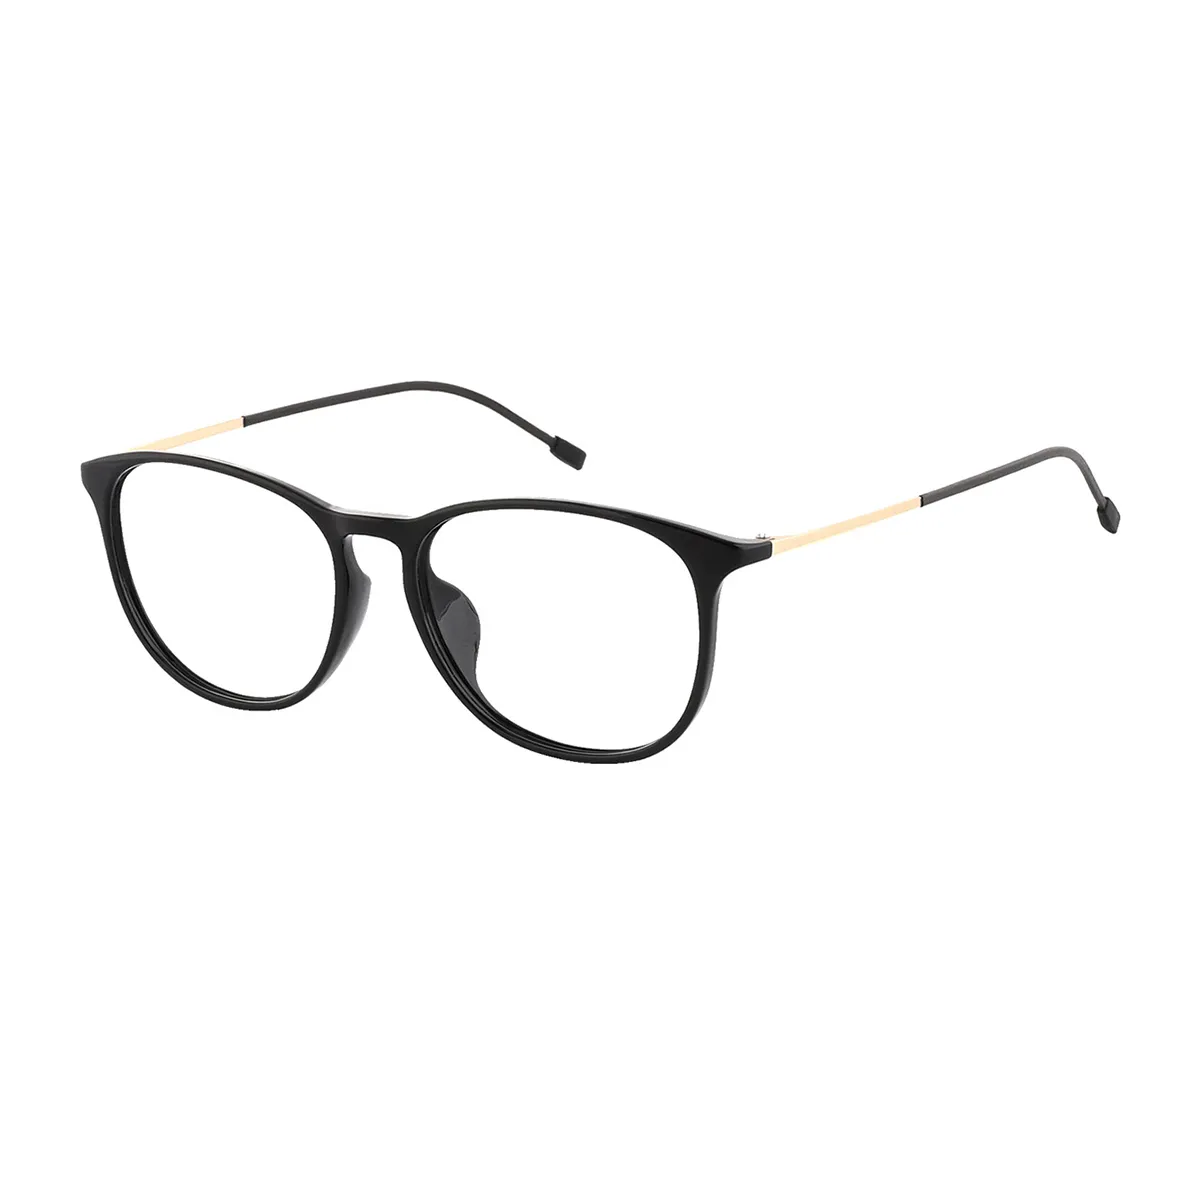 Daugherty - Oval Black-Gold Glasses for Men & Women - EFE